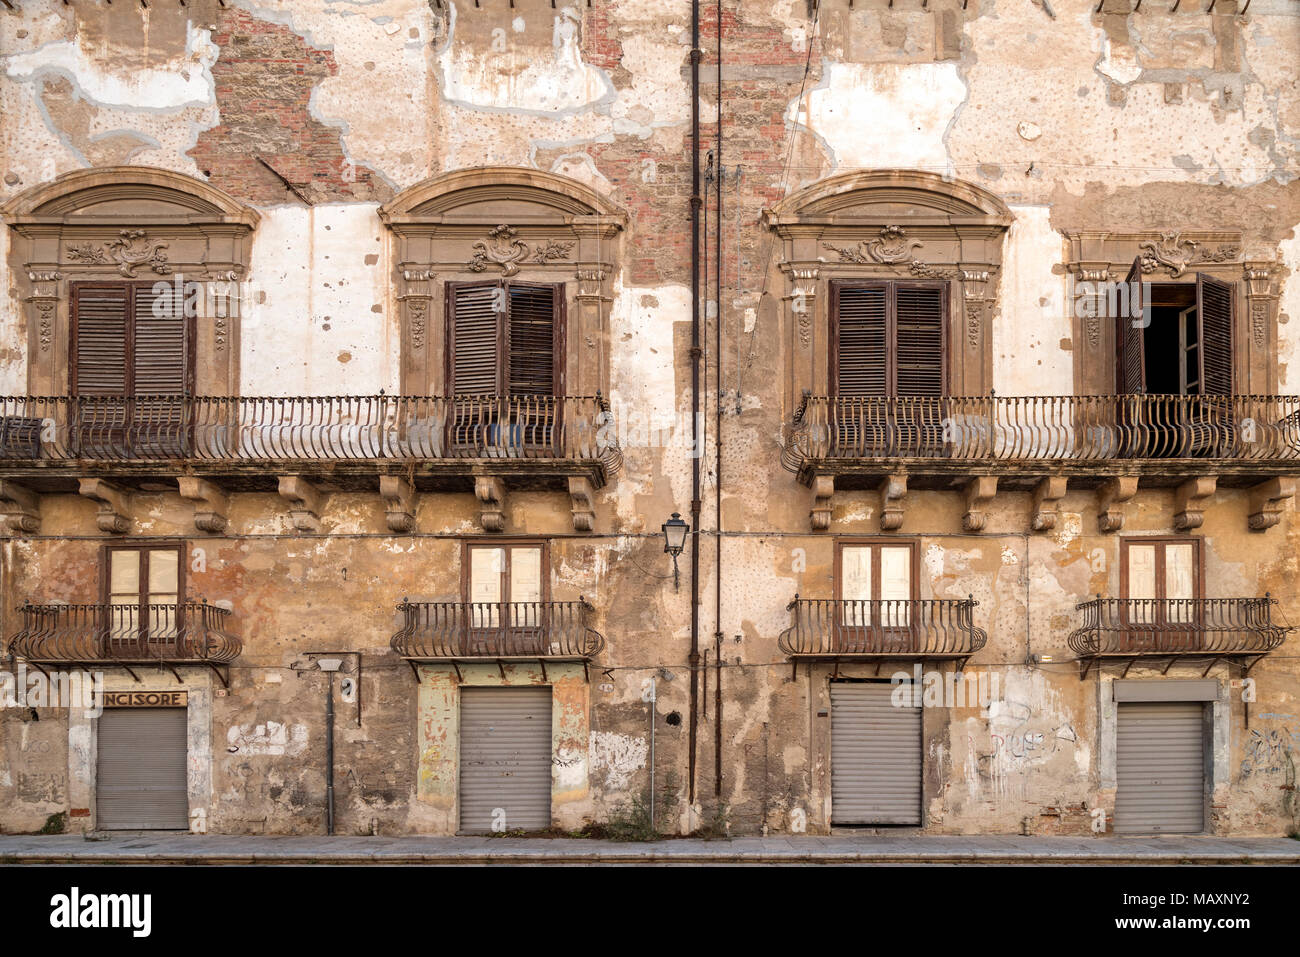 Die Fassade eines Gebäudes in Palermo, Sizilien, Italien. Komplizierte detaillierte Architektur und Gips Rendering, die über die Zeit der Entdeckung der b überstanden hat Stockfoto